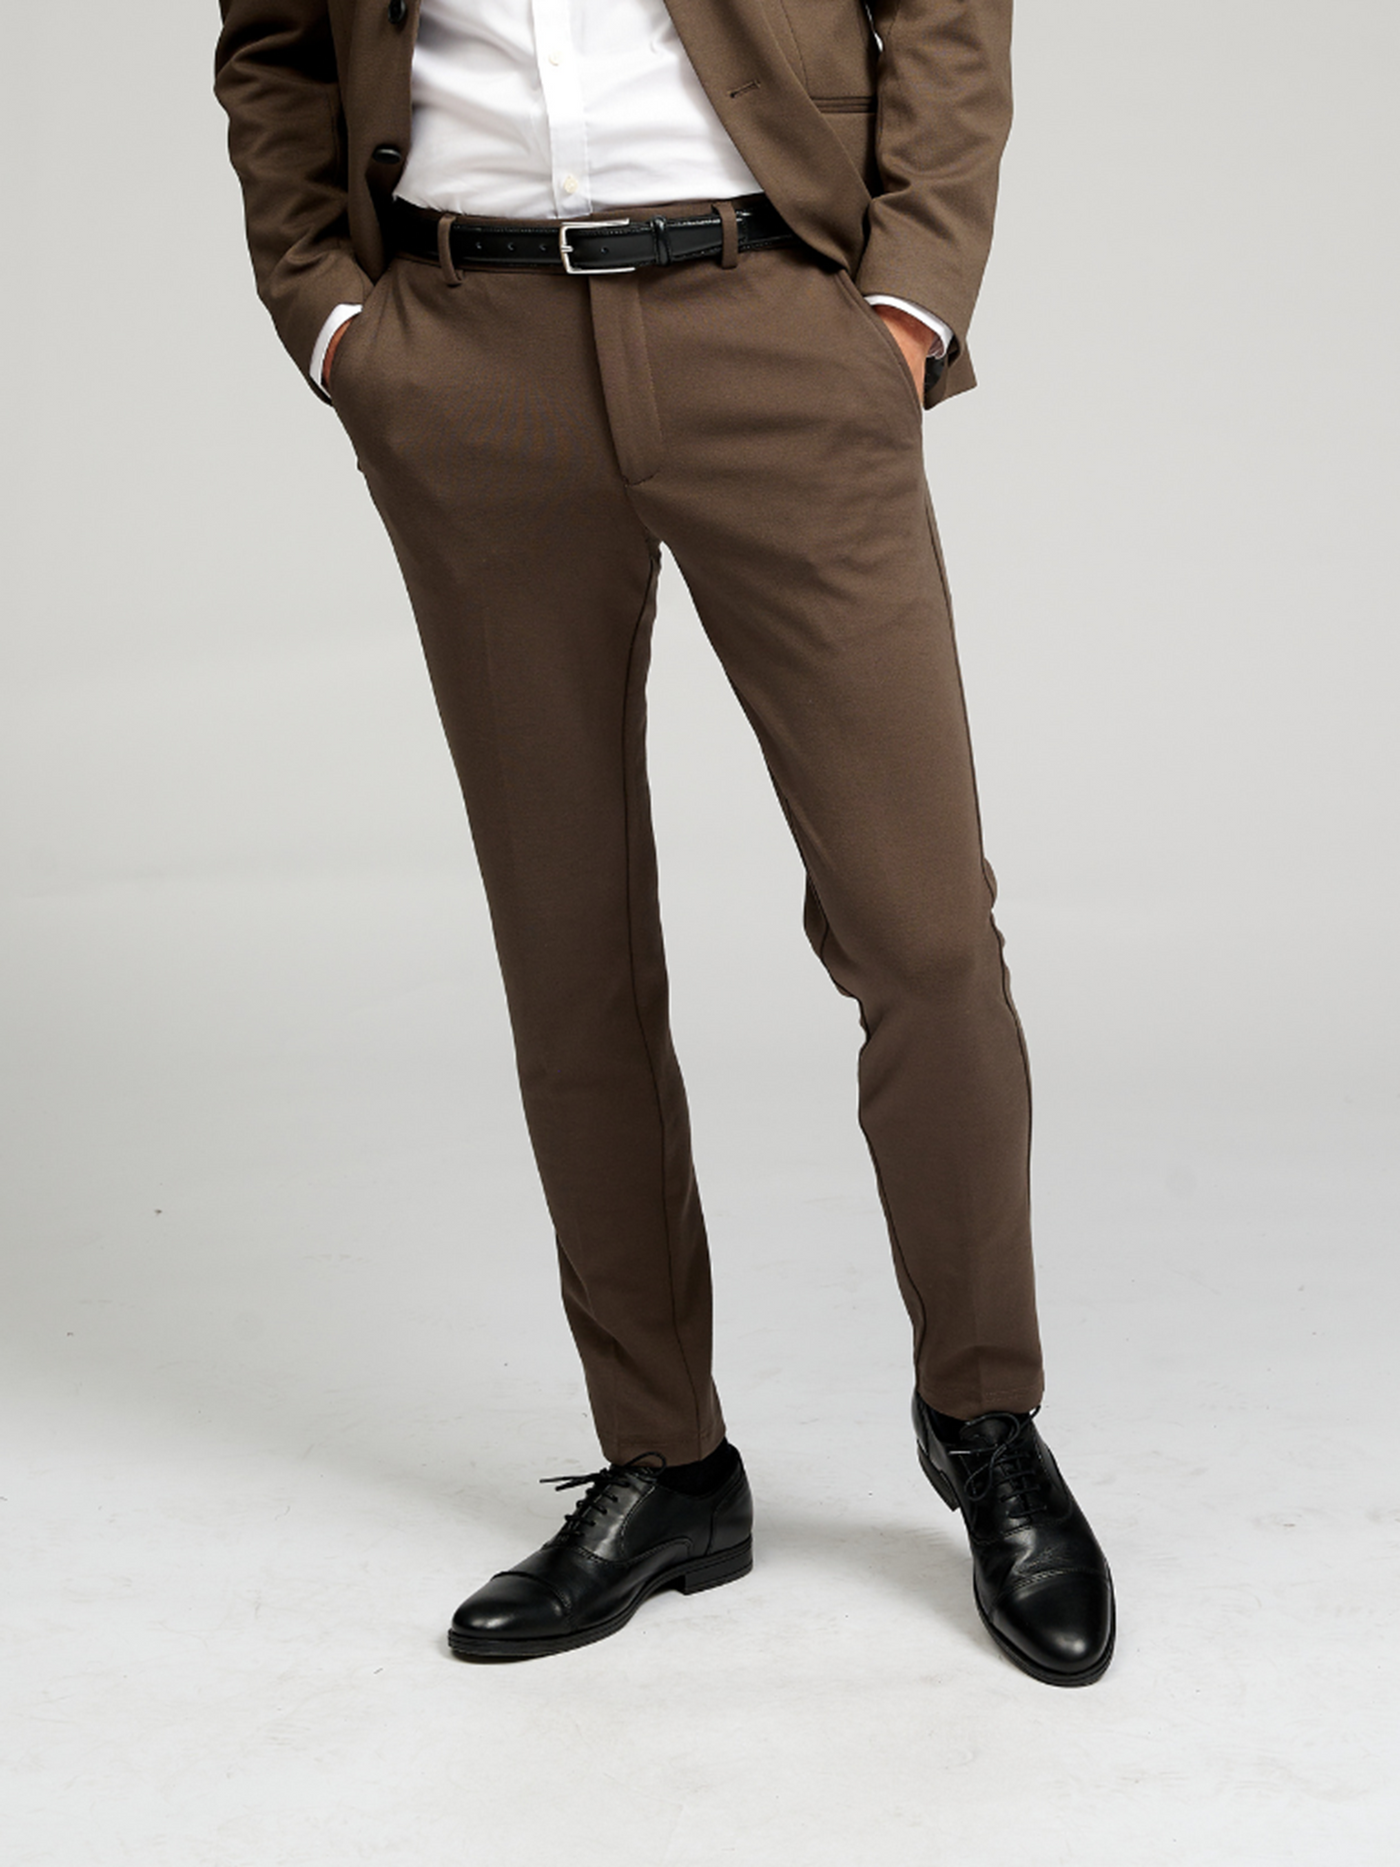 dark khaki/light brown pants | Pants, Cheap pants, Fashion